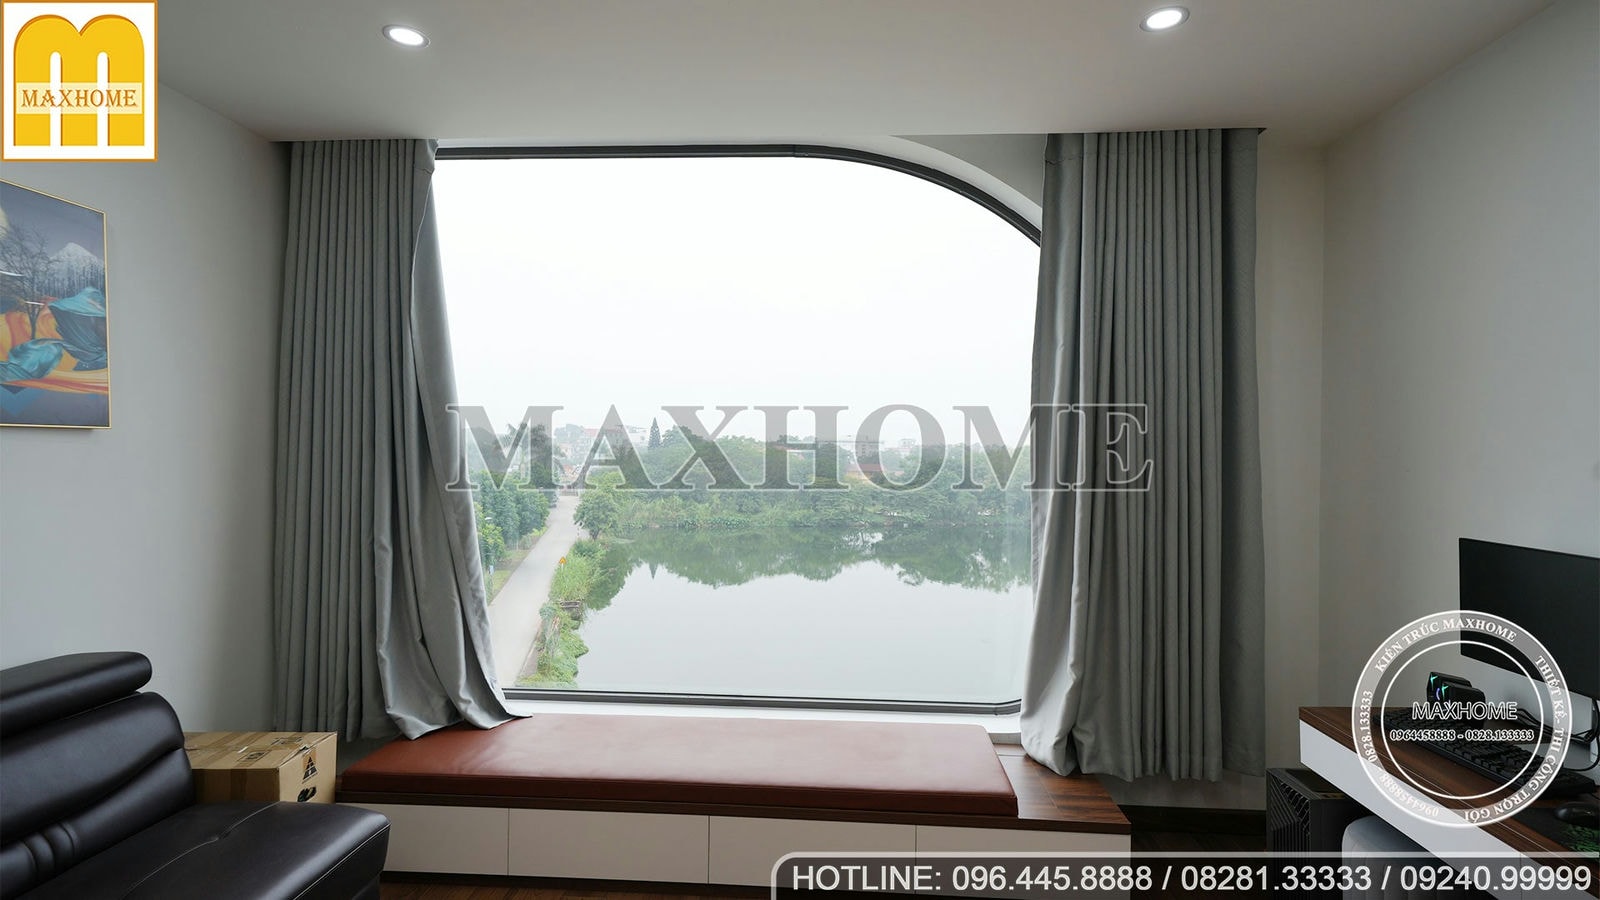 Maxhome bàn giao nhà phố 4 tầng 1 tum view hồ cực đỉnh tại Hà Nội